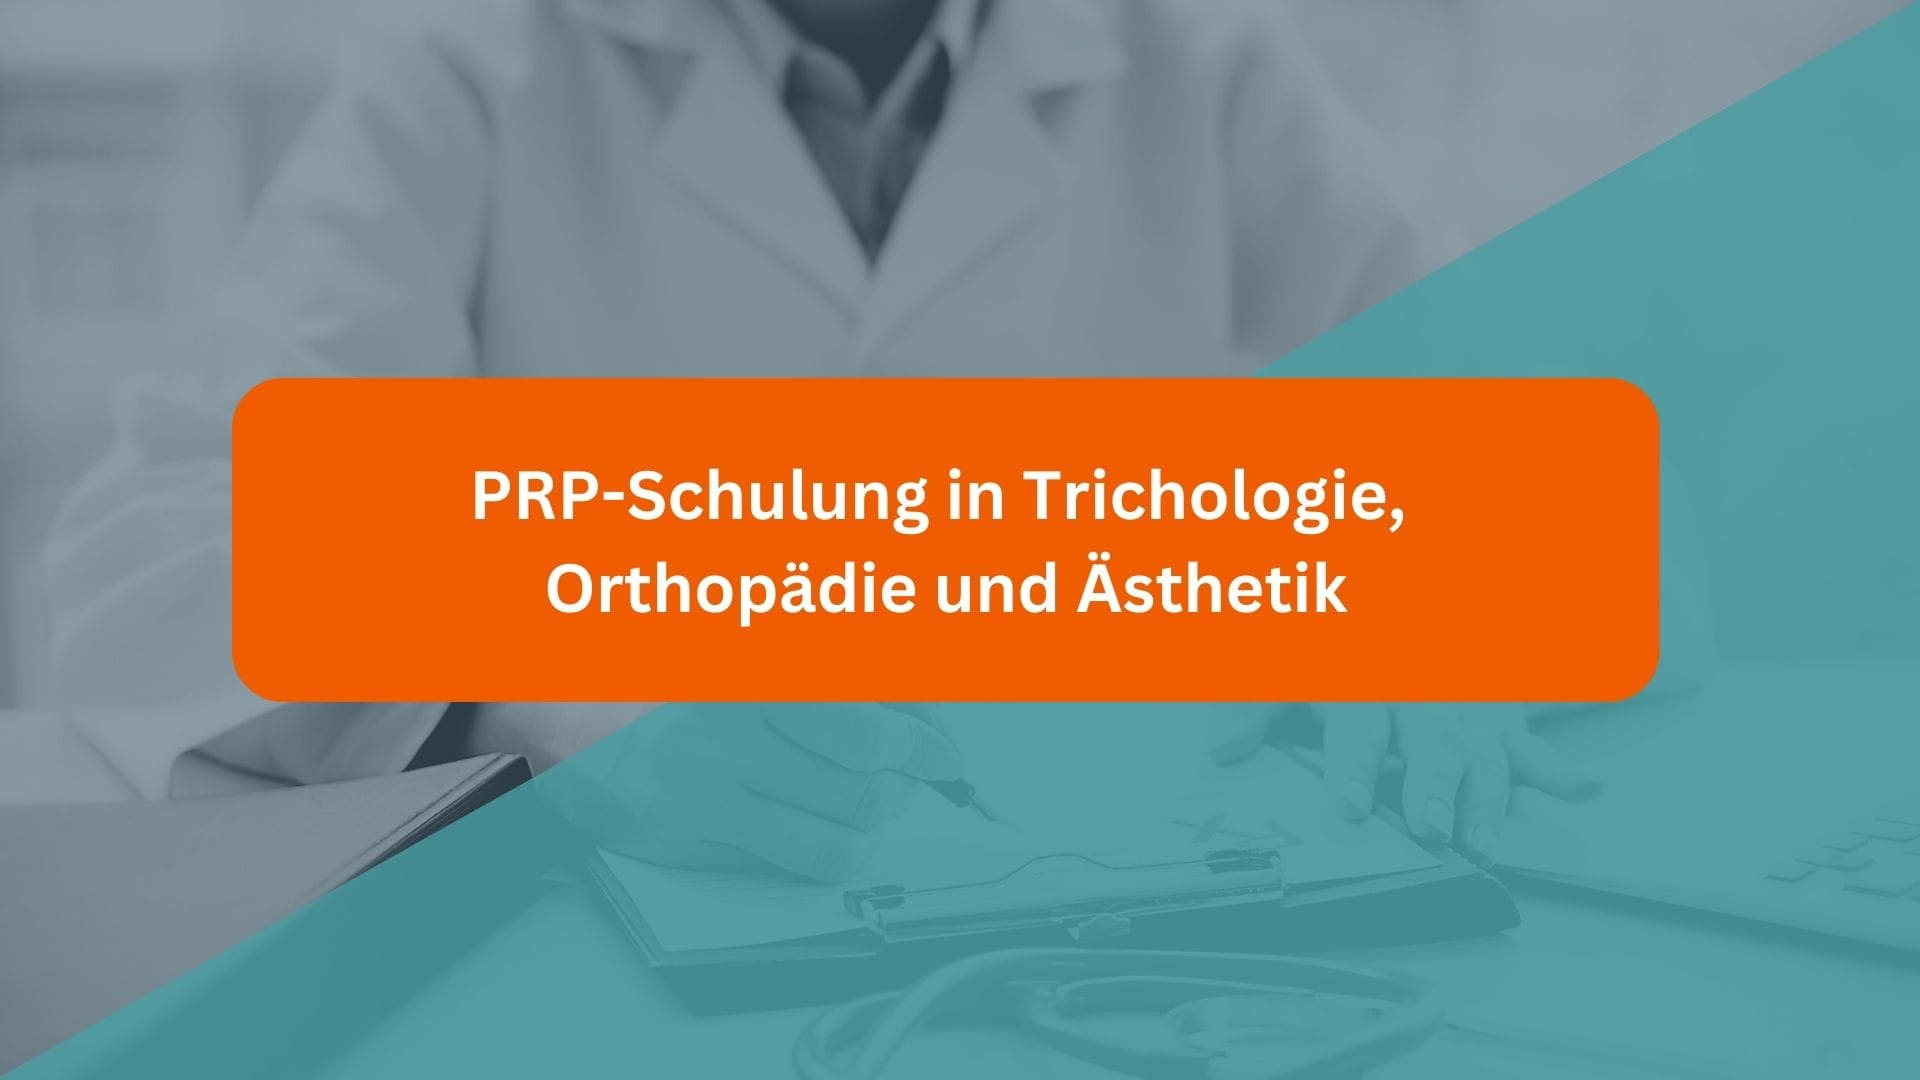 Întrebări frecvente - Formare PRP în domeniile trichologie, ortopedie și estetică